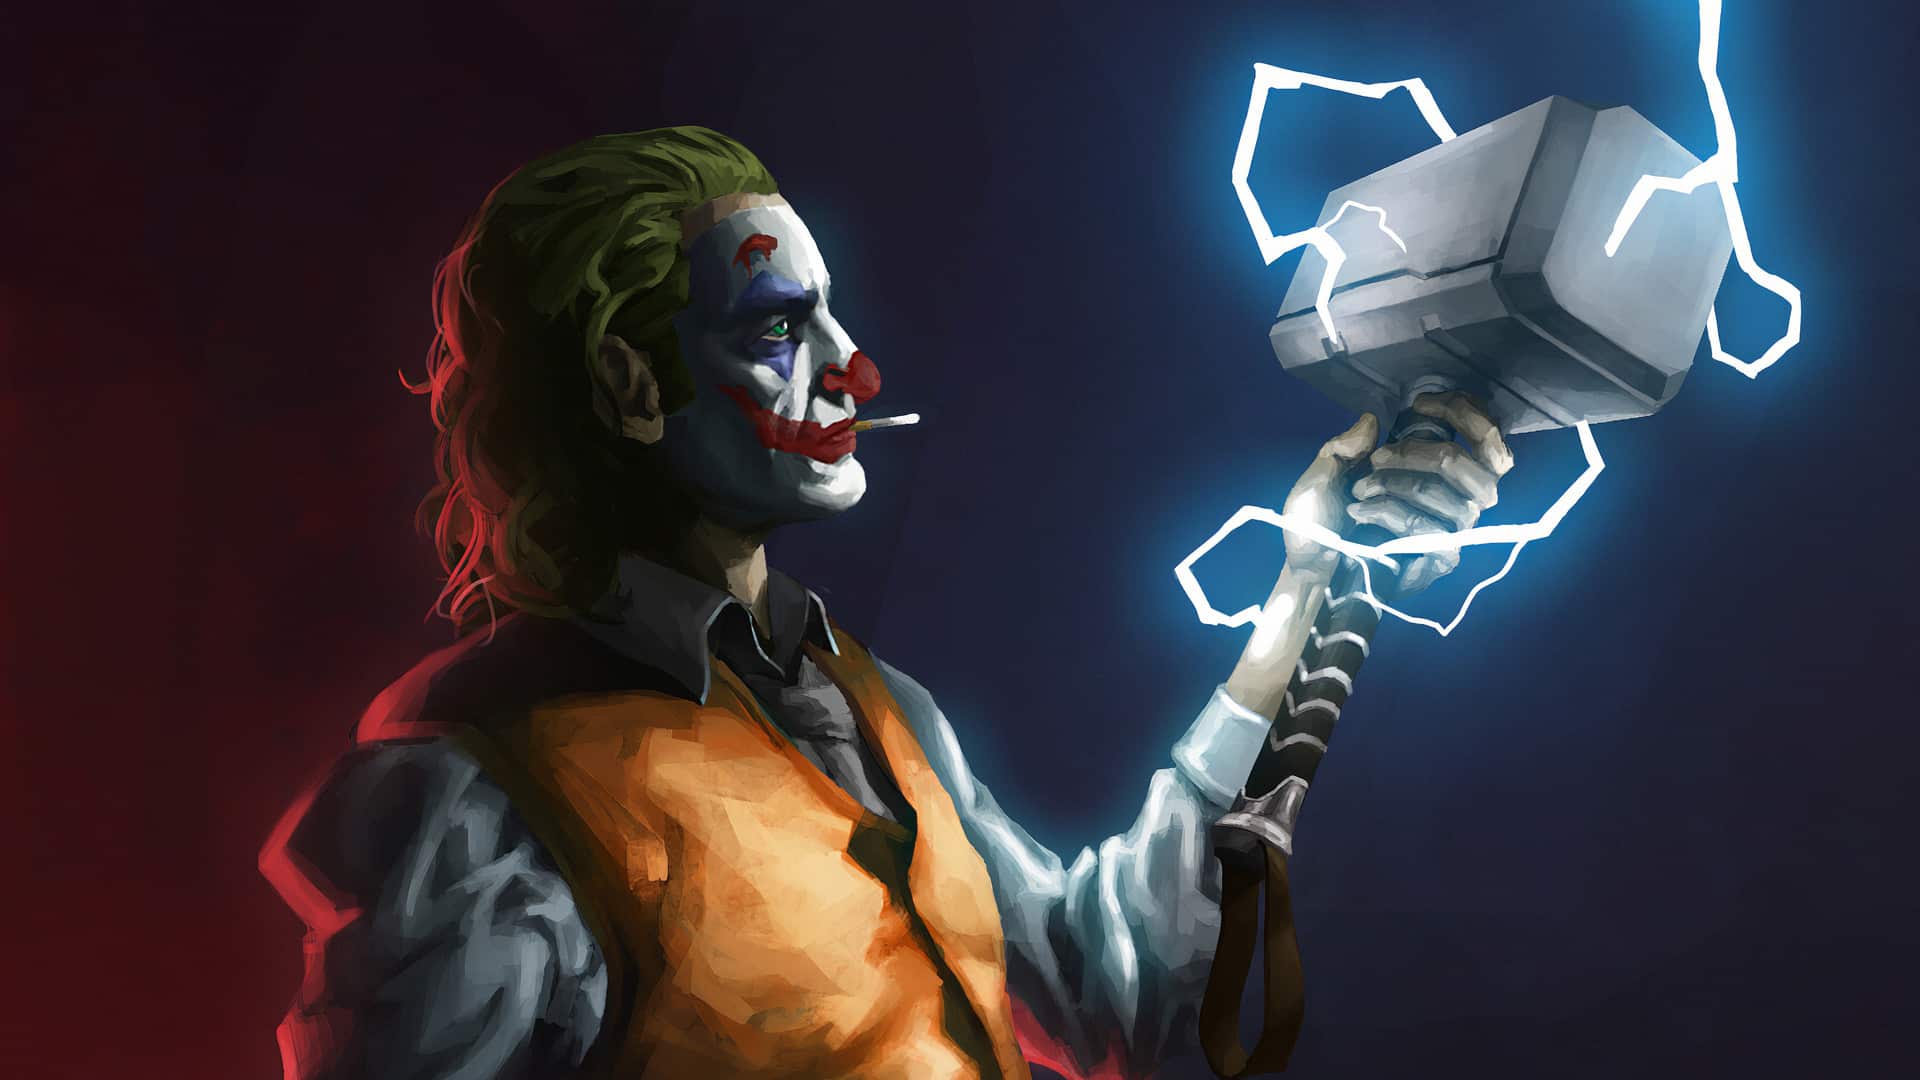 Hình ảnh Joker ngầu cầm cây búa của Thor thể hiện sức mạnh tuyệt đối.